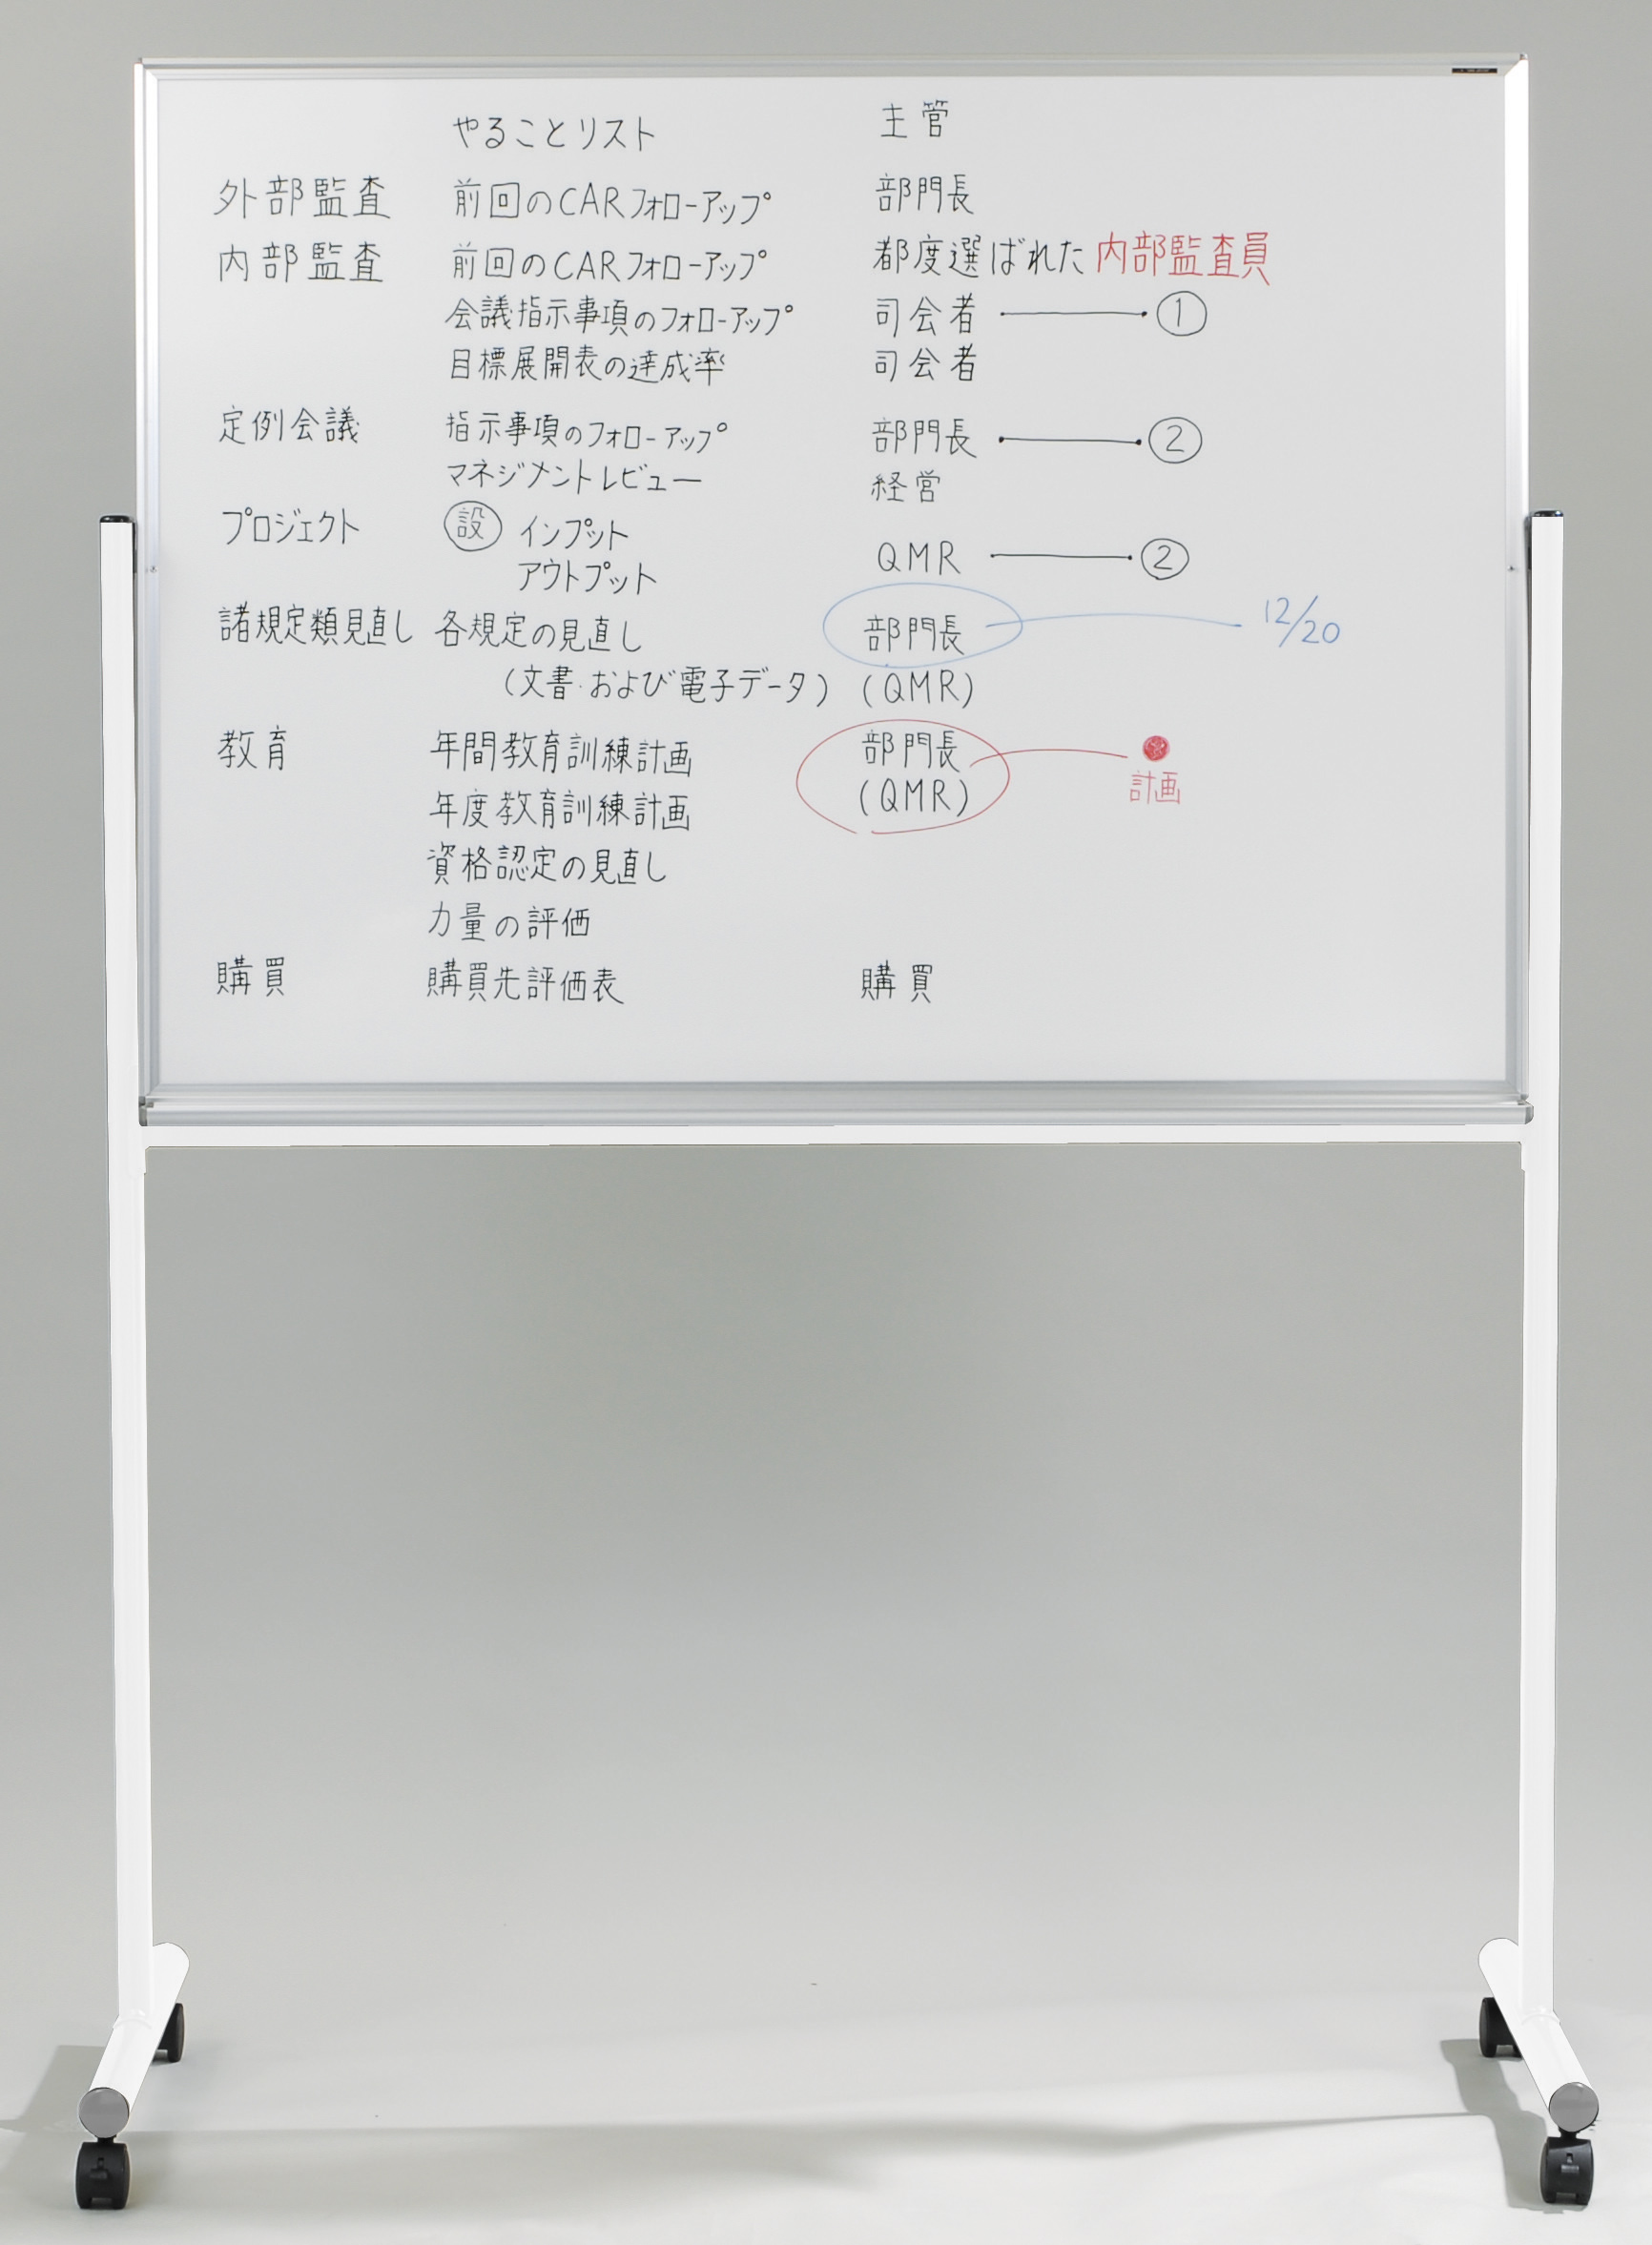 MAJIシリーズ（脚付ホワイトボード） - ホワイトボード・黒板 